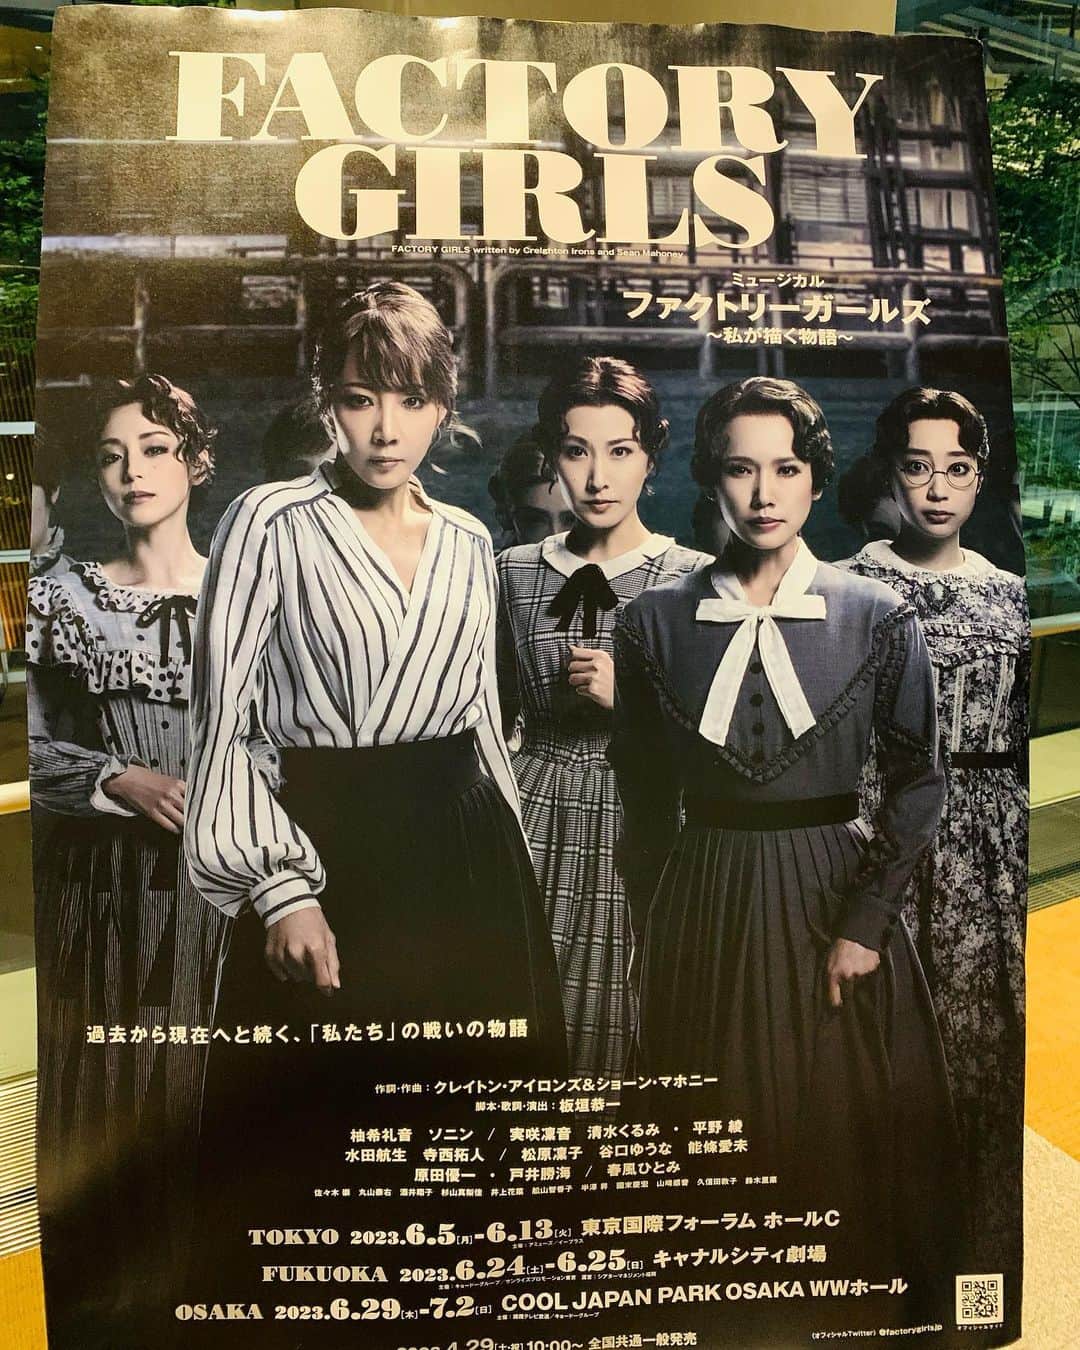 幹てつやのインスタグラム：「ミュージカル 「Factory Girls」 観劇してきました‼︎  めちゃ勇気とパワーを戴きました‼︎  サイコーでした‼︎  #factorygirls #factorygirl #ファクトリーガールズ #ミュージカル #東京国際フォーラムc #サイコー #スタンディングオベーション #幹てつや」